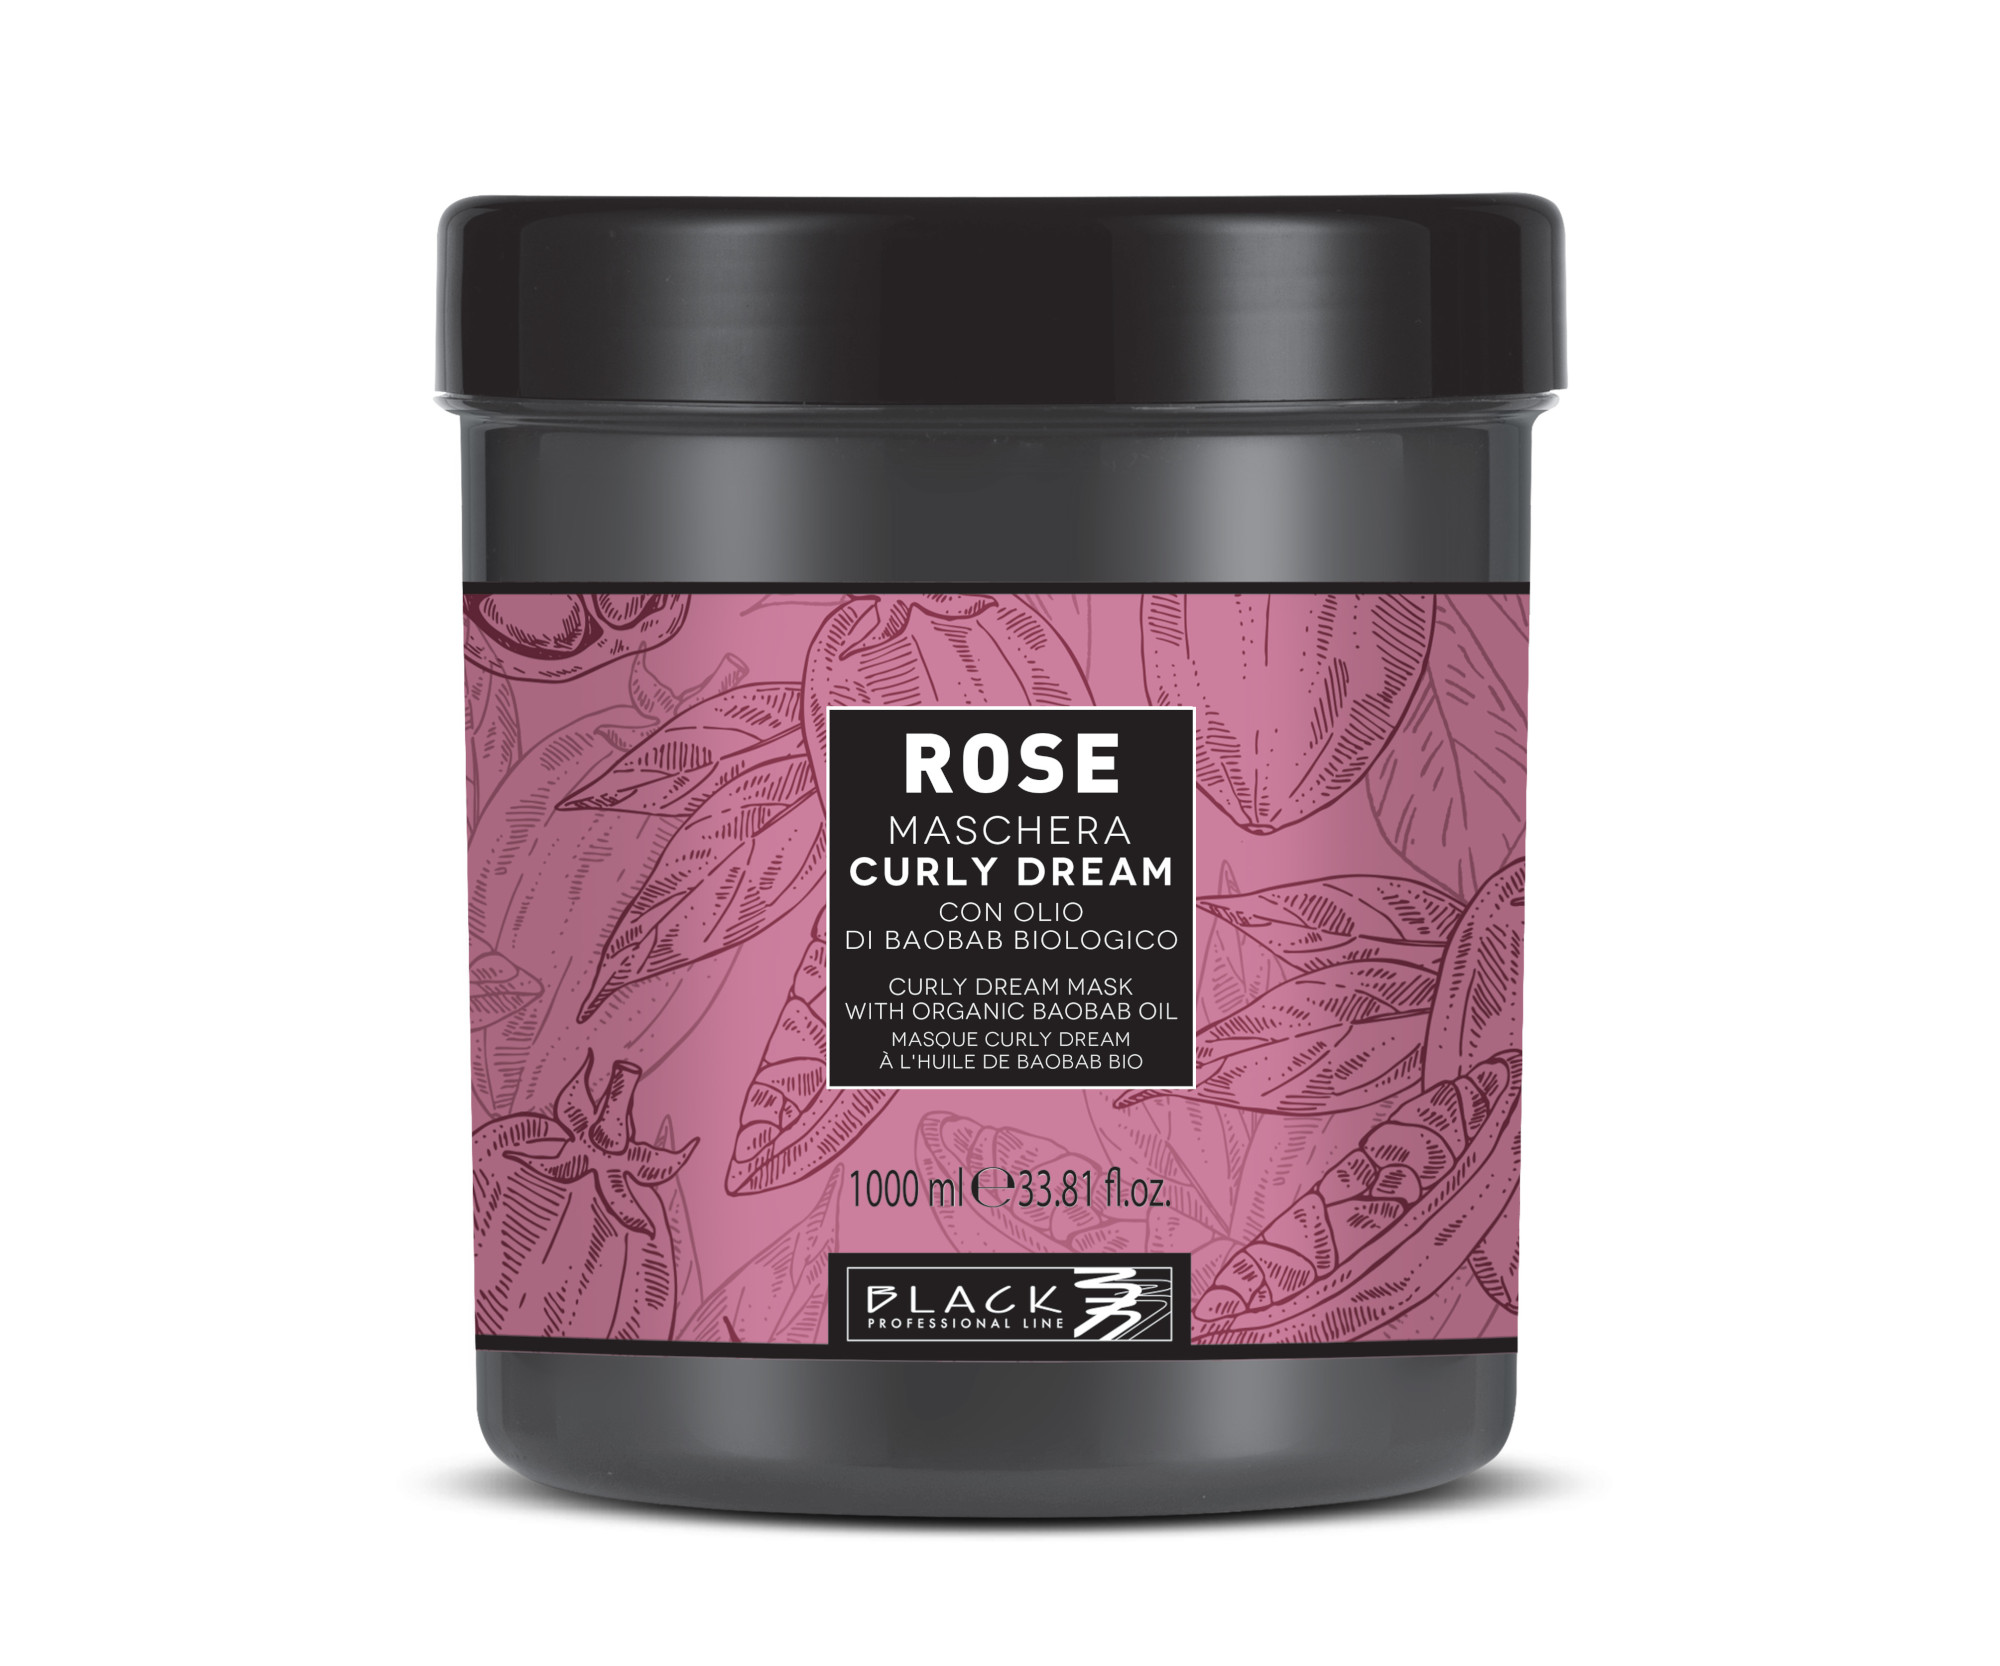 Maska pro vlnité a kudrnaté vlasy Black Rose Curly Dream Mask - 1000 ml (102026) + DÁREK ZDARMA